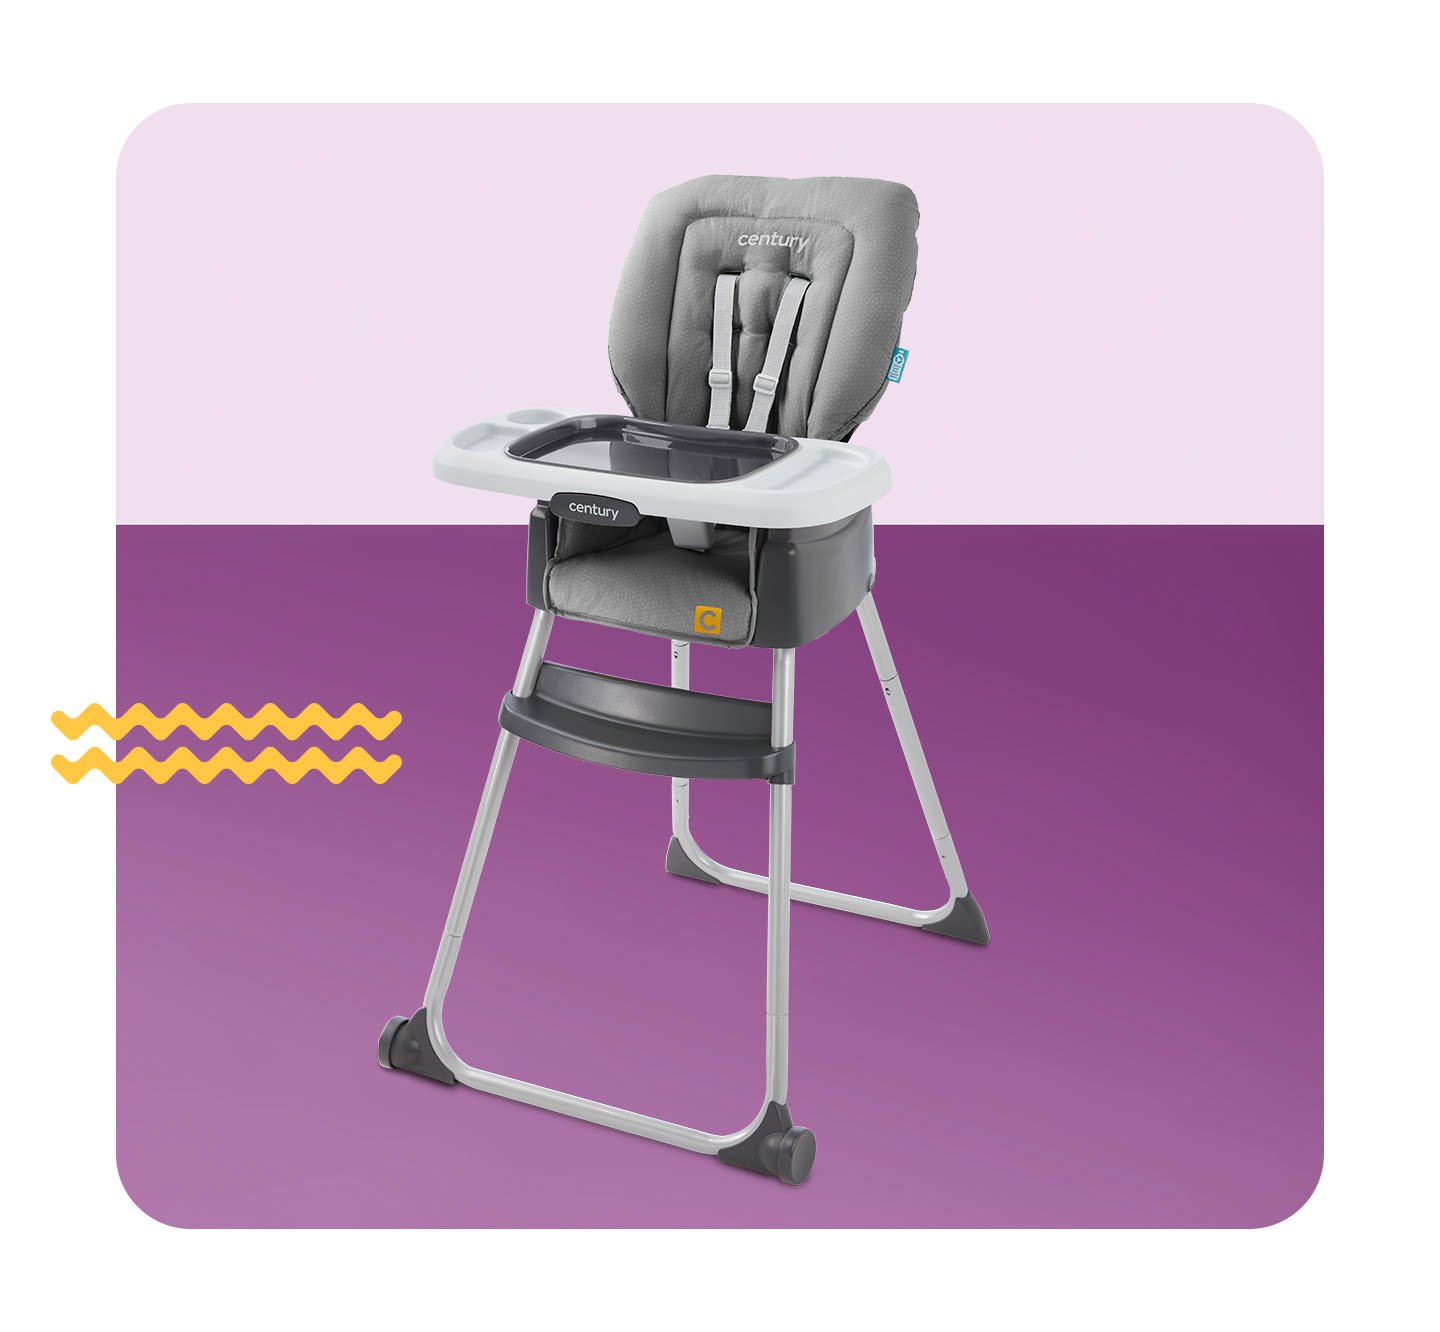 Booster Cushion, High Chair Accessories, High Chairs